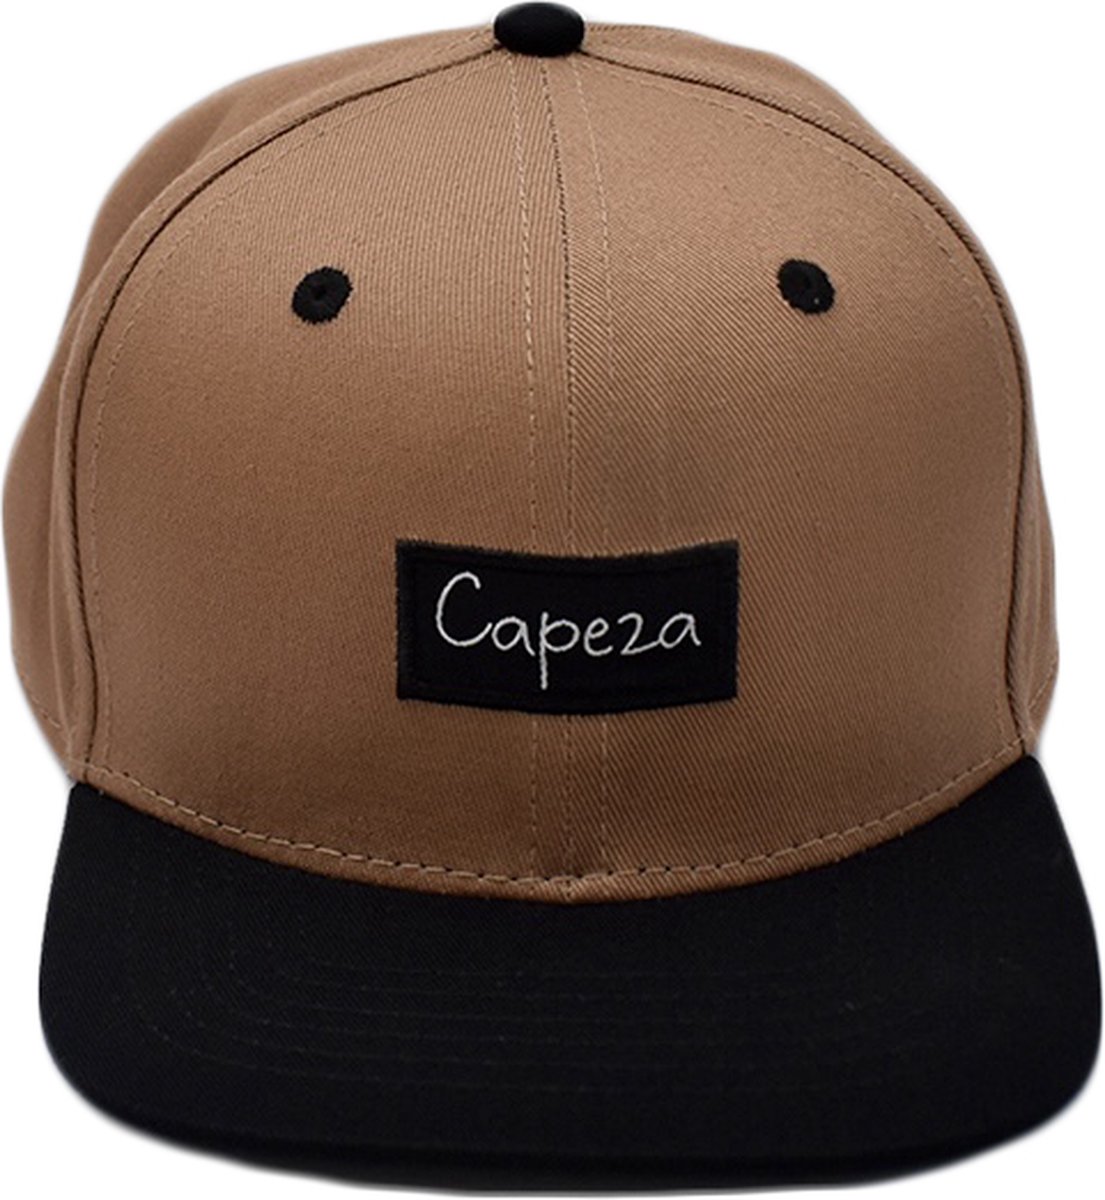 Capeza - Milan - Kind 6 jaar en hoger - Snapback kind - Kinderpet - Zomerpet - Pet voor kinderen - snapback cap